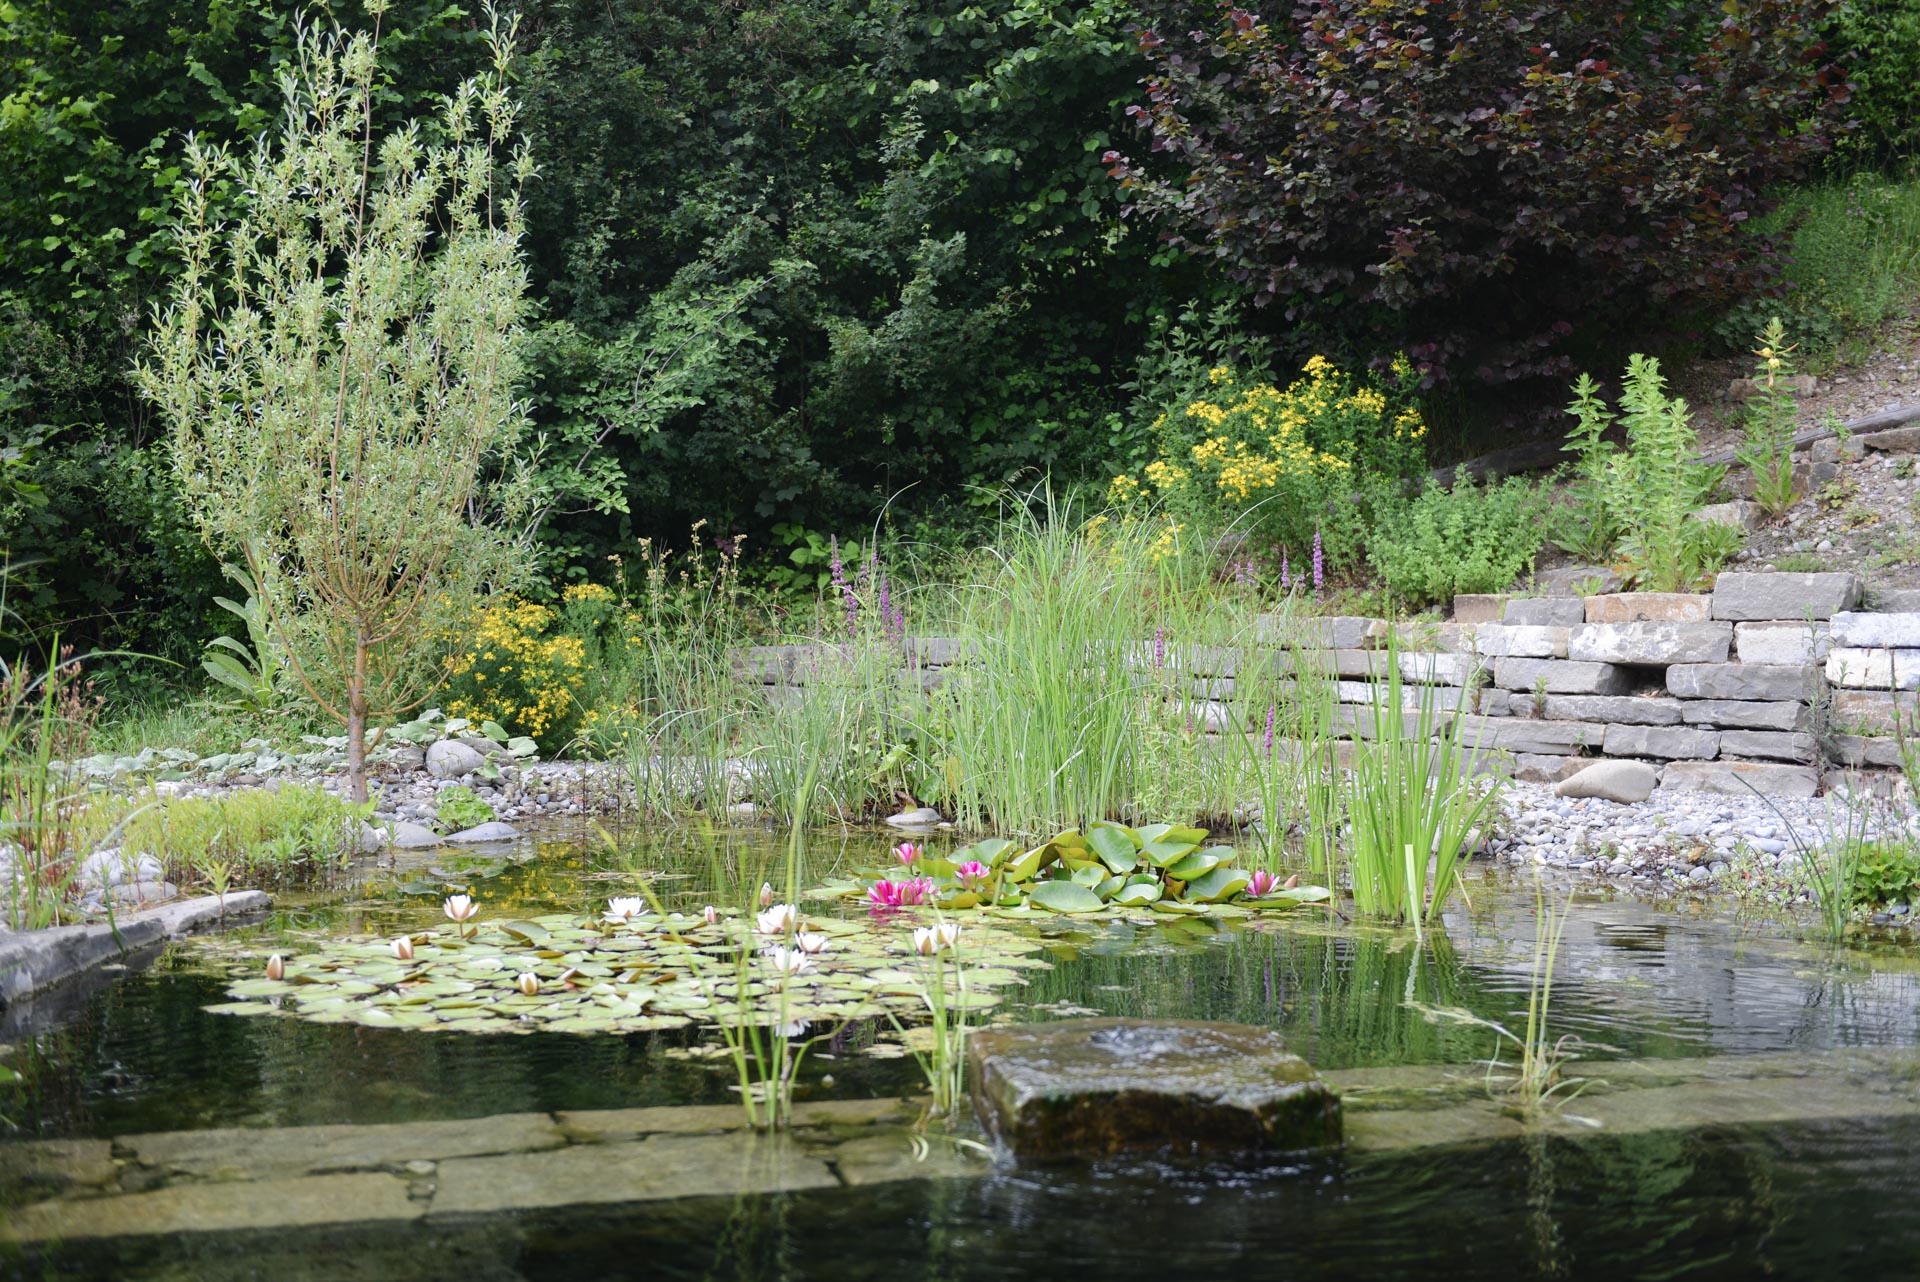 Bepflanzung: Ein sorgfältig bepflanzter Garten mit einer Vielfalt an Blumen und Sträuchern sowie einem Teich